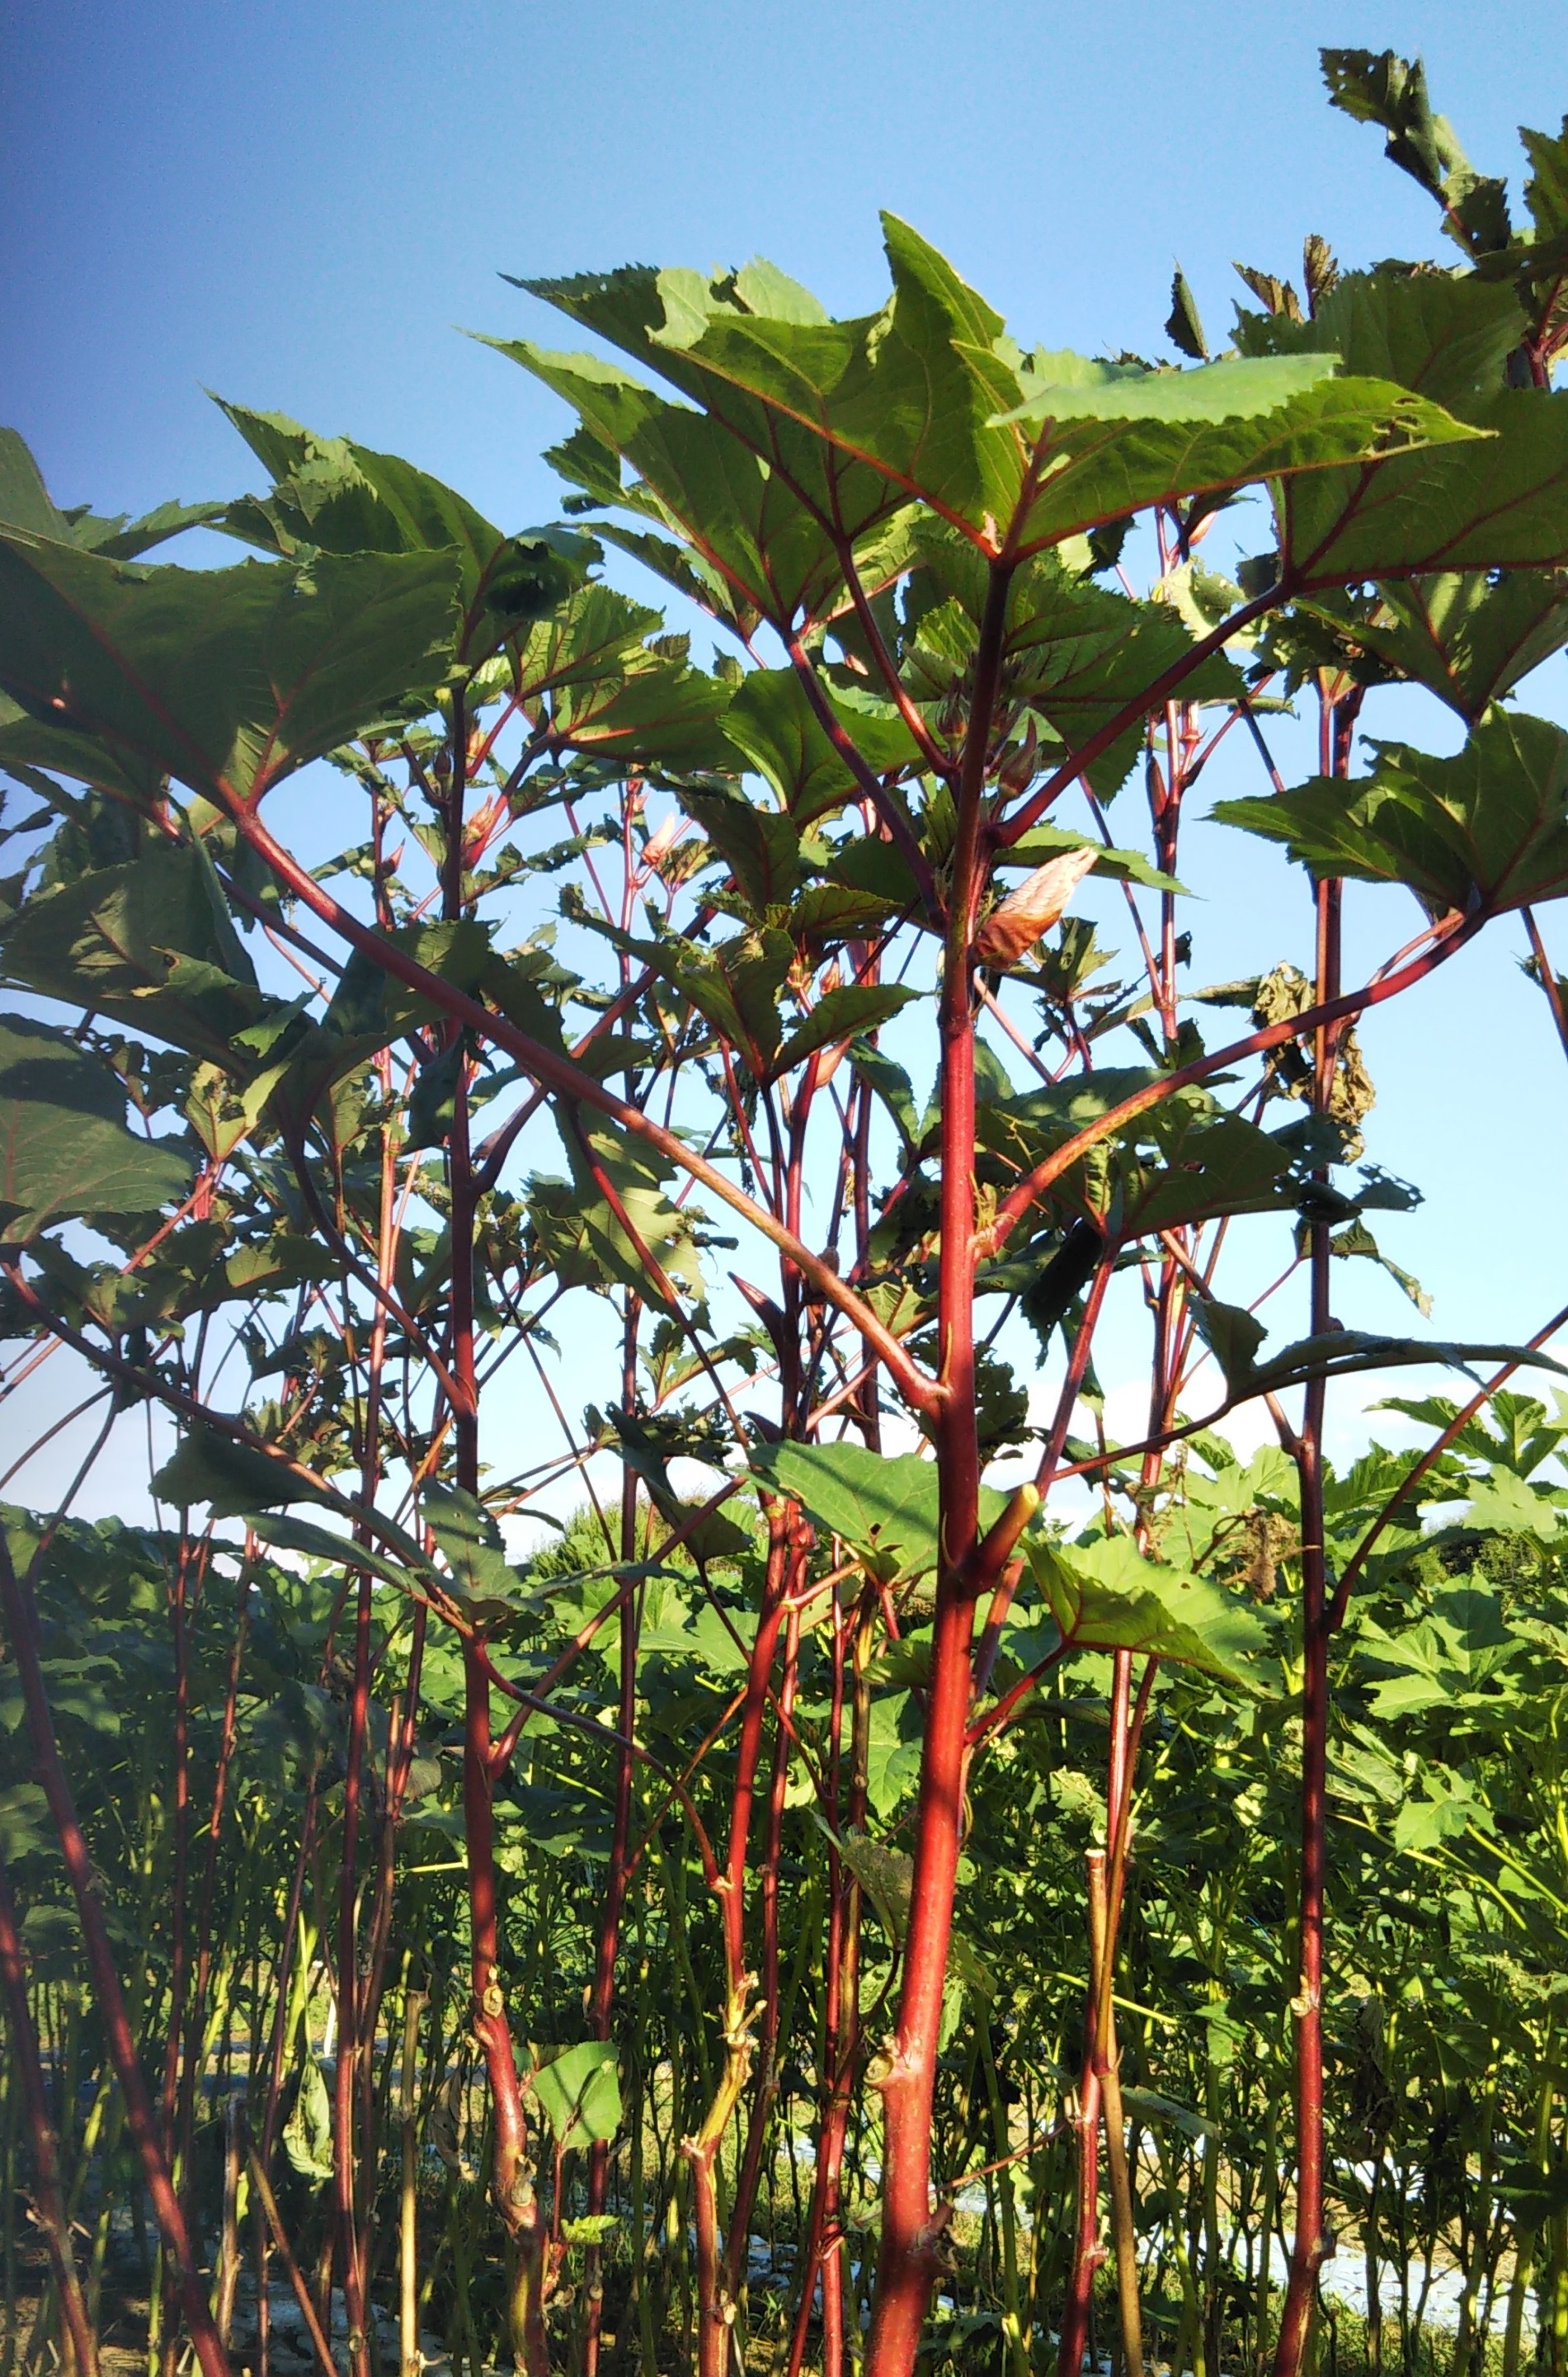 嵐山町公式 嵐山町の農業 まっすぐ２メートルほど伸びた赤い茎 この植物はなんでしょう 生でも加熱しても美味しく食べられる 野菜 です 緑色が一般的ですが これは珍しい赤い種類 栽培している農家さん曰く 大きくなりすぎちゃった との